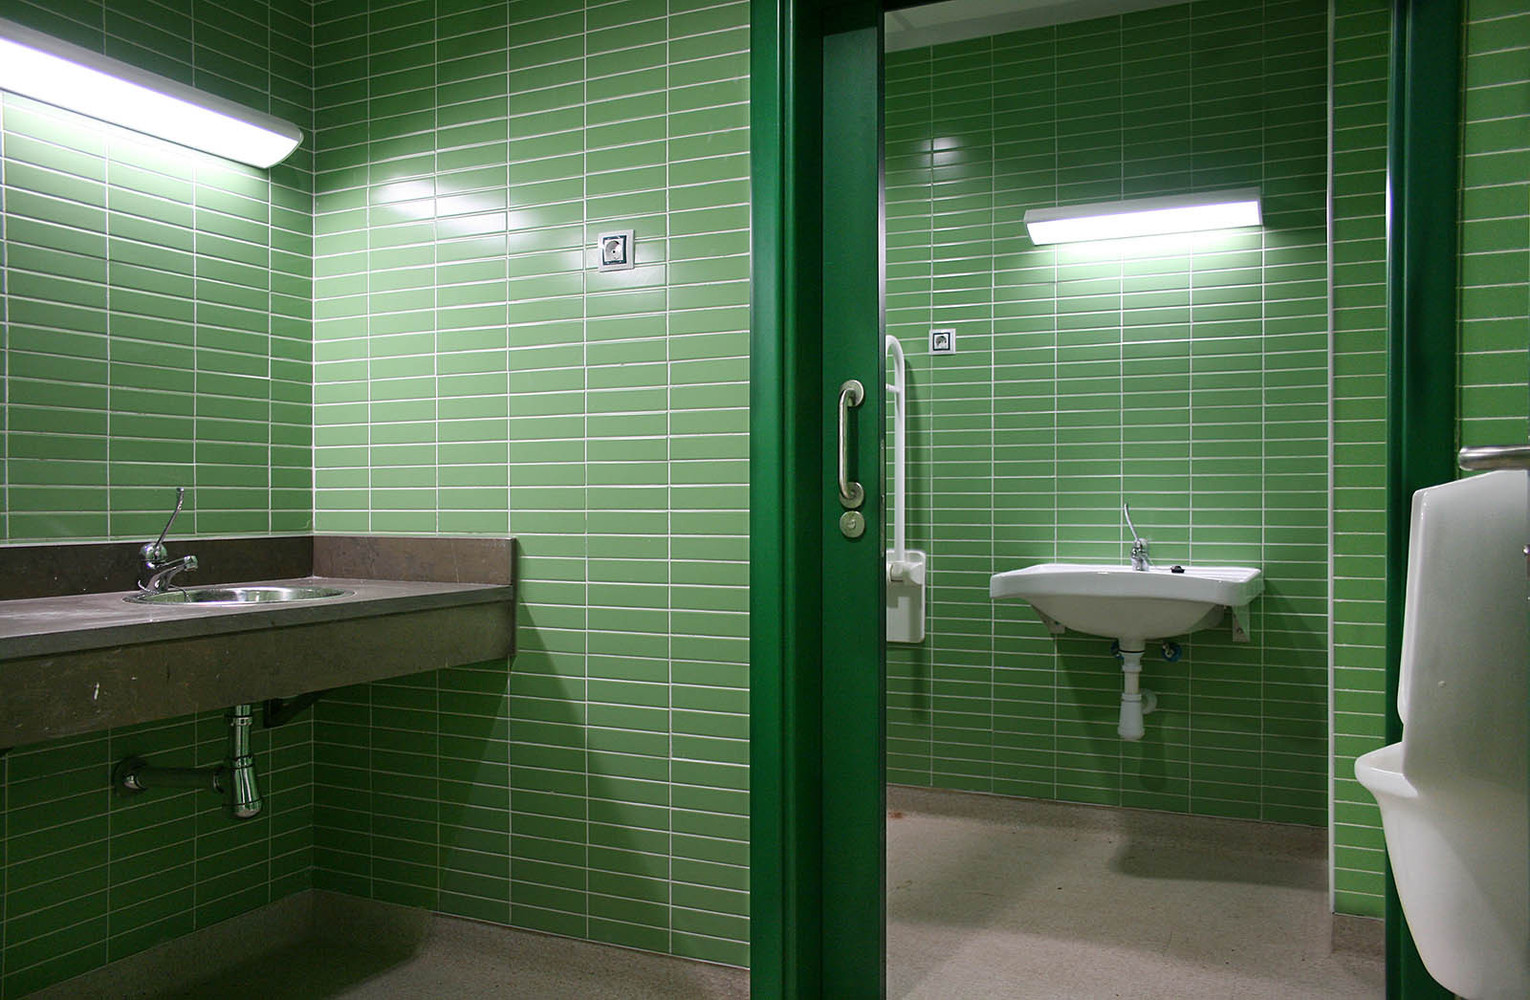 Sàn phòng tắm cần được lát bằng các vật liệu chống trơn trượt.